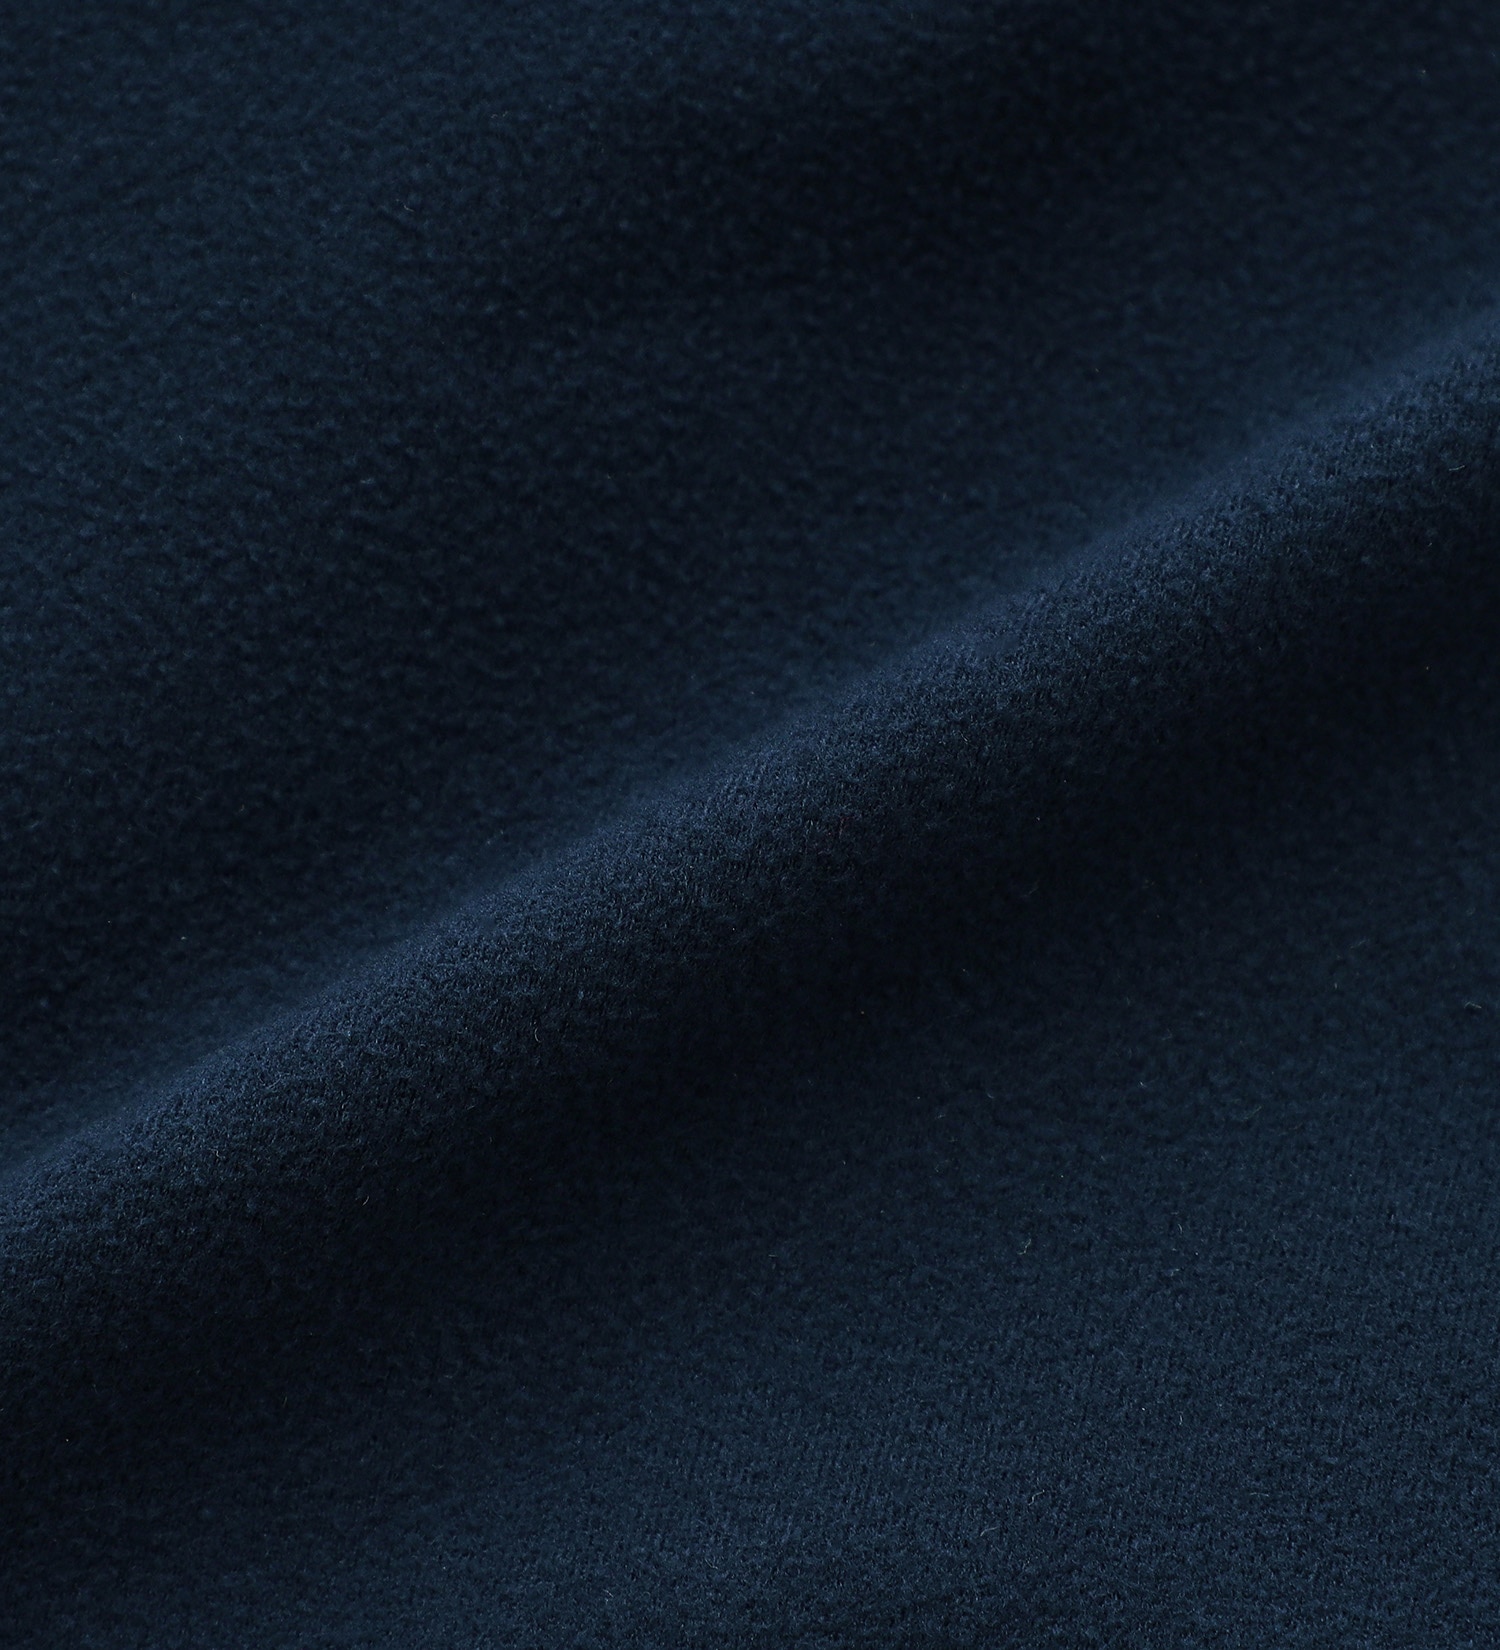 EDWIN(エドウイン)の【BLACKFRIDAY】暖かムレない快適 3層構造 EDWIN WILD FIRE レギュラーストレートパンツ【暖】|パンツ/デニムパンツ/メンズ|中色ブルー